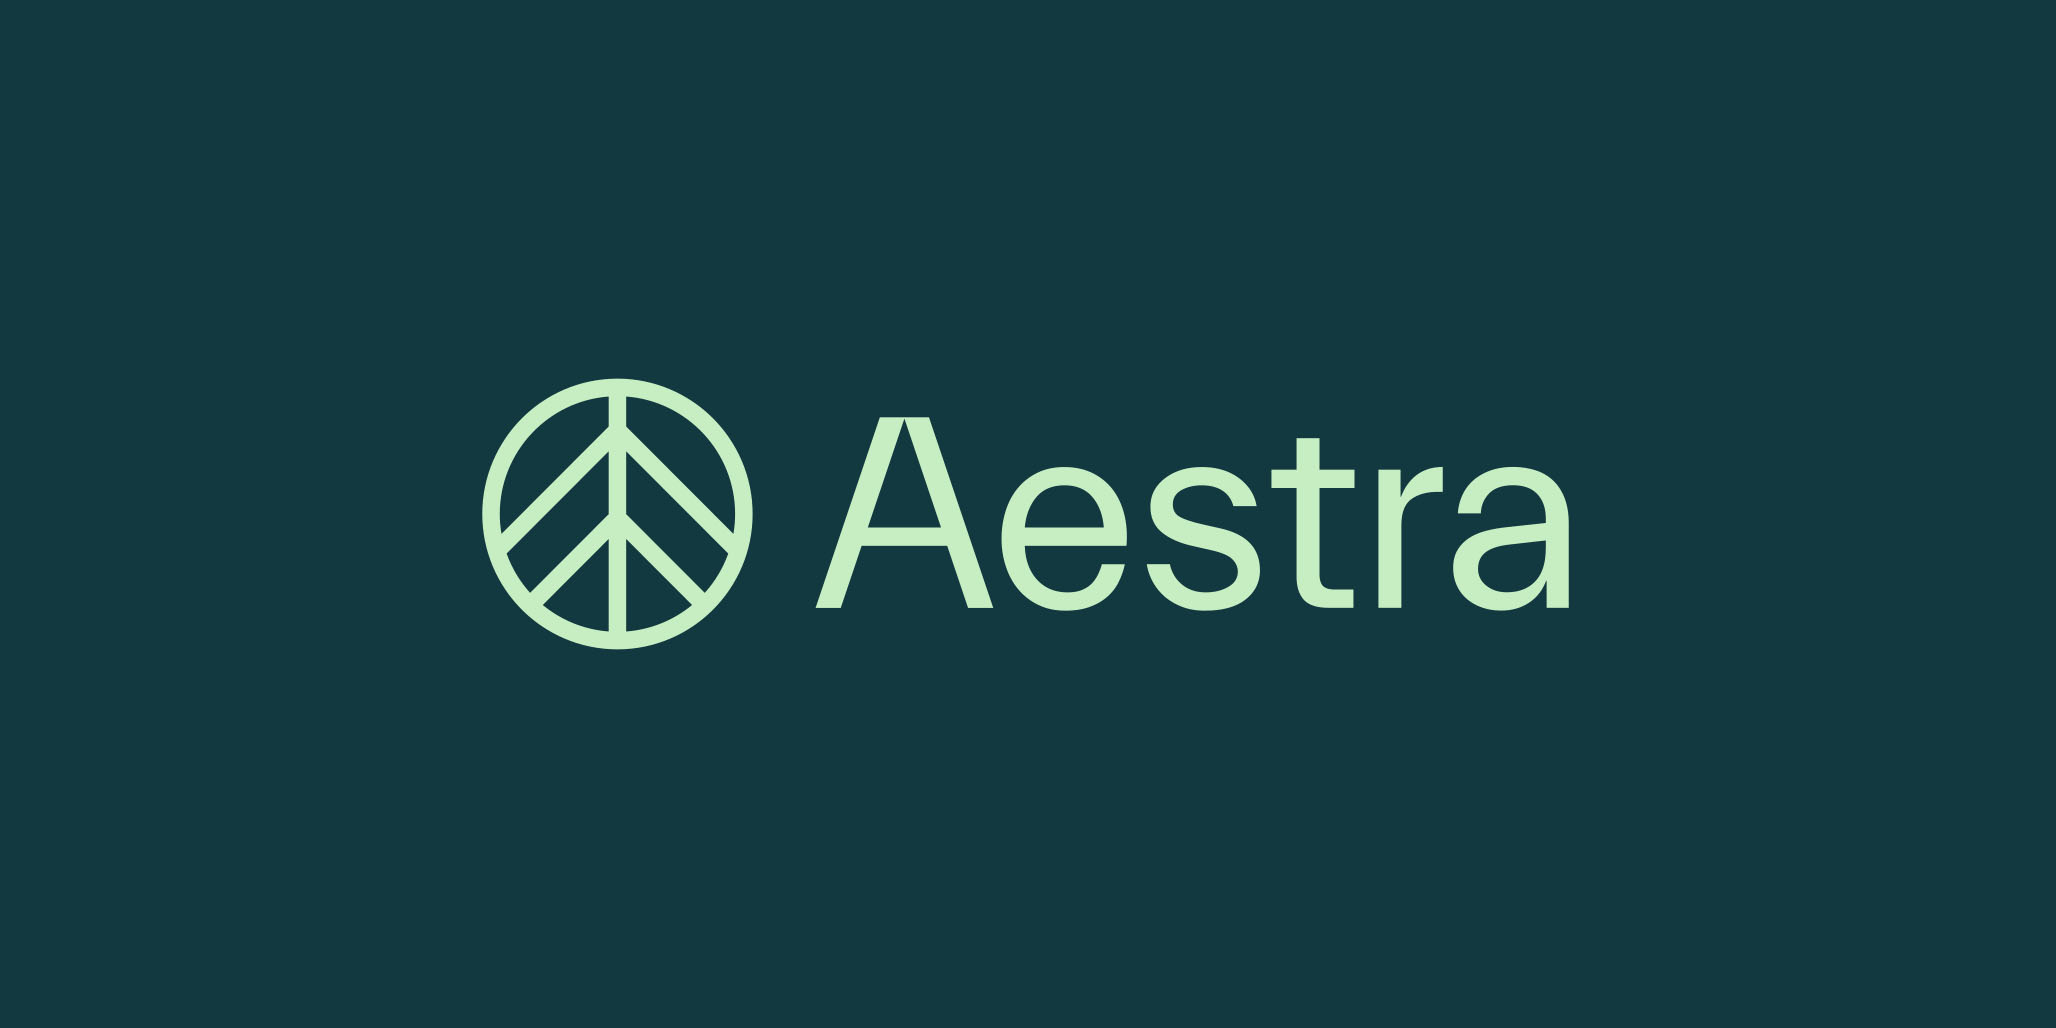 Percept Creates Branding for Aestra